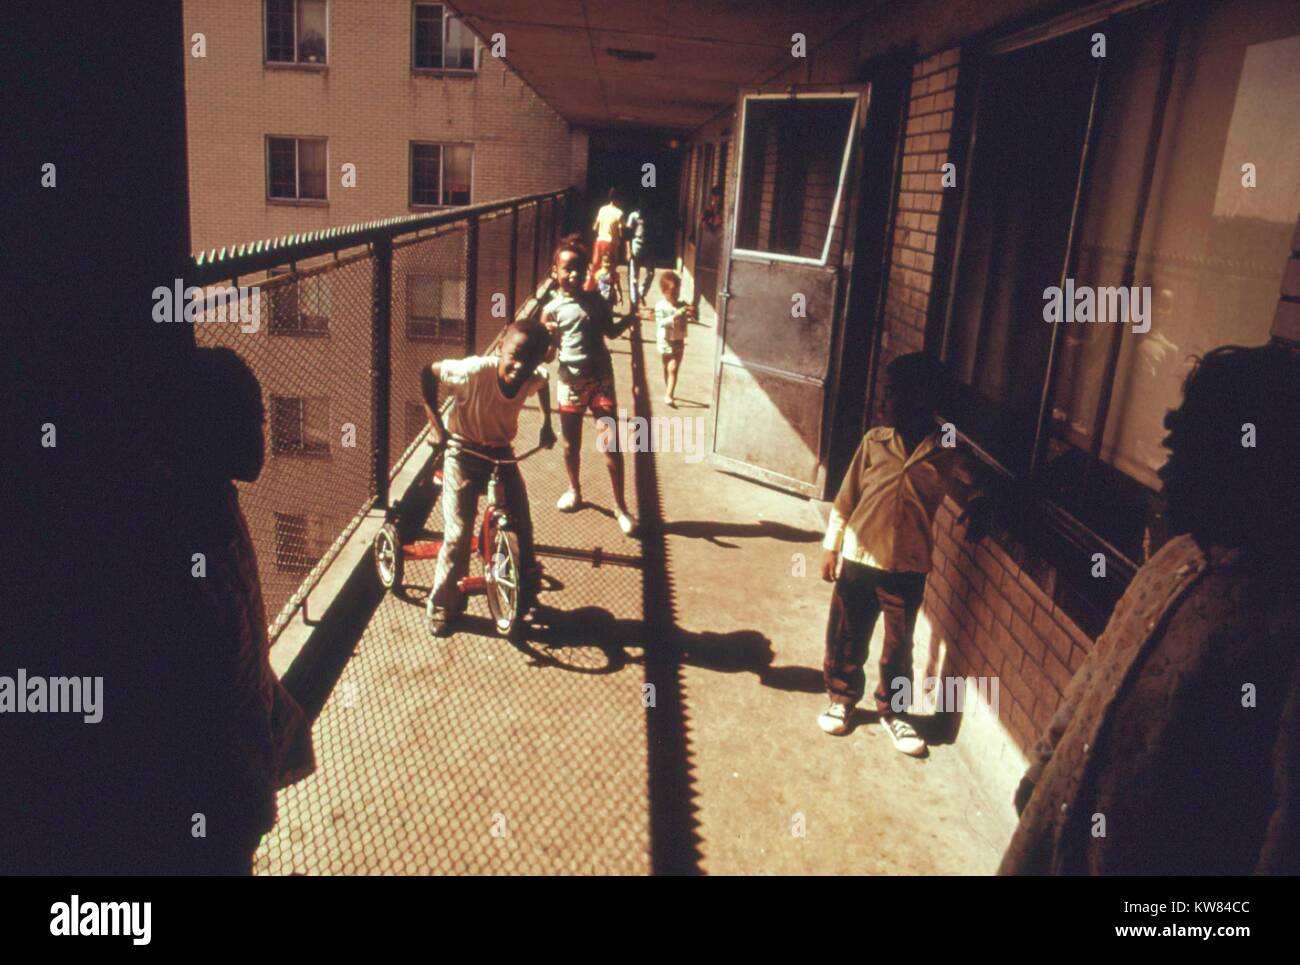 Schwarze Bewohner auf einem der Balkone des Robert Taylor Häuser, ein niedriges Einkommen hochhaus Apartment; Kinder sind Reiten Fahrräder und Spielen auf dem Balkon, Chicago, Illinois, 1973. Bild mit freundlicher Genehmigung von John White/US National Archives. Mit freundlicher Genehmigung der nationalen Archive. Stockfoto